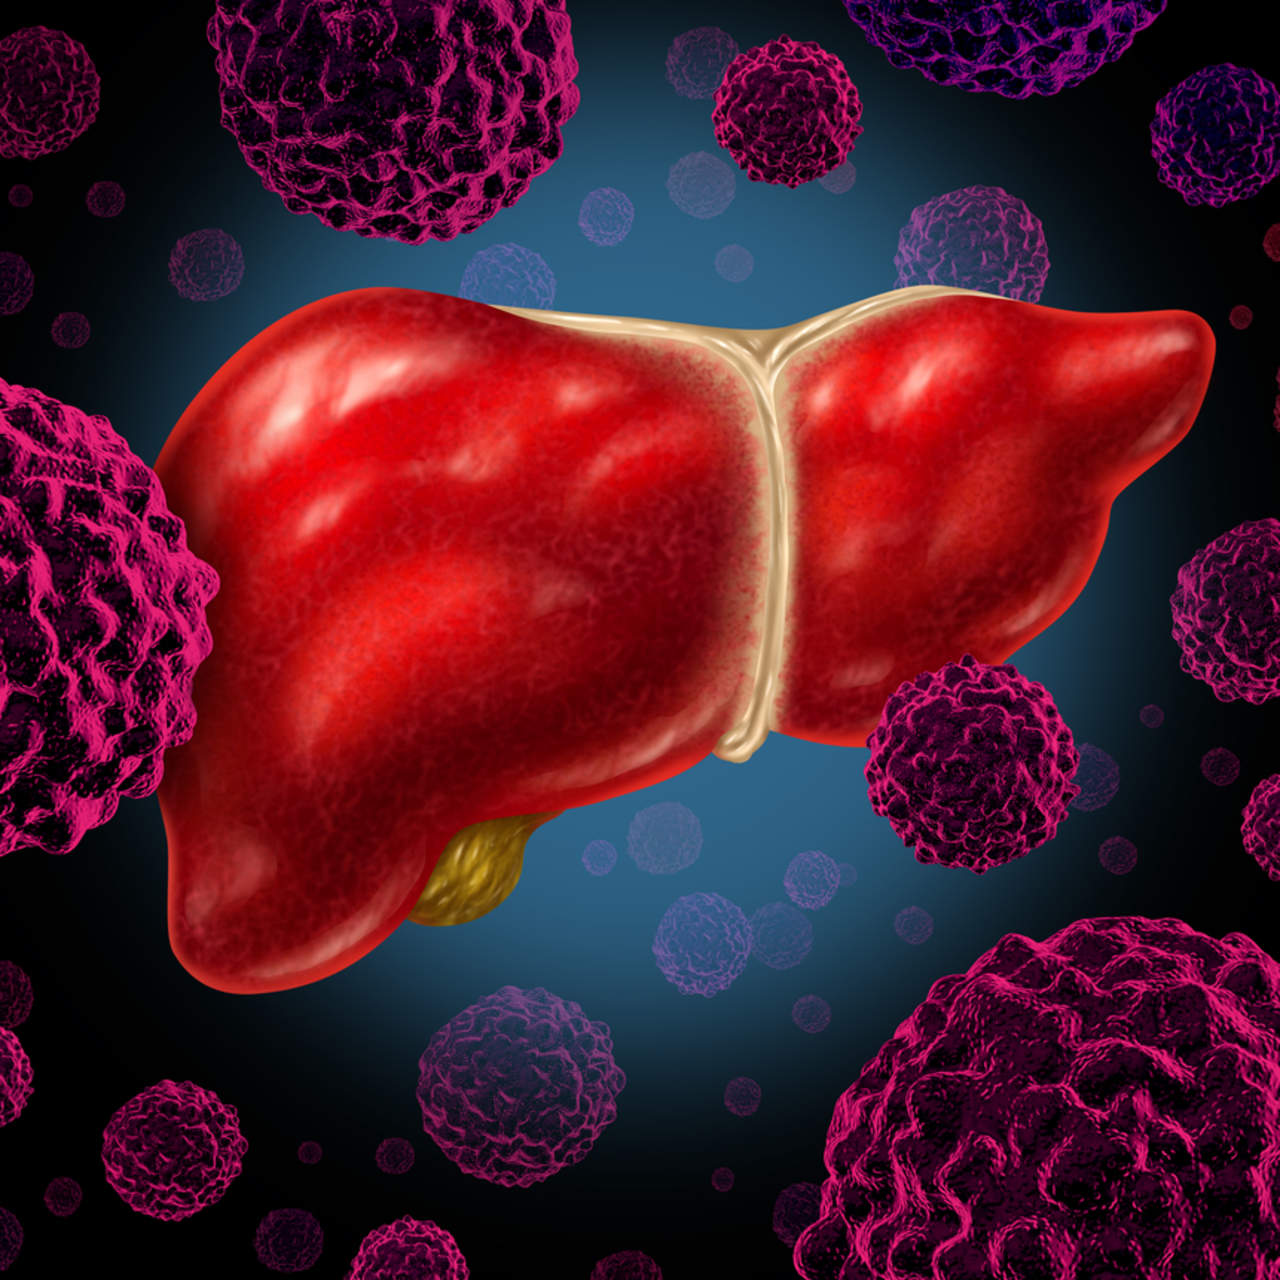 Obesidad y hepatitis aumentan incidencia de cáncer de hígado